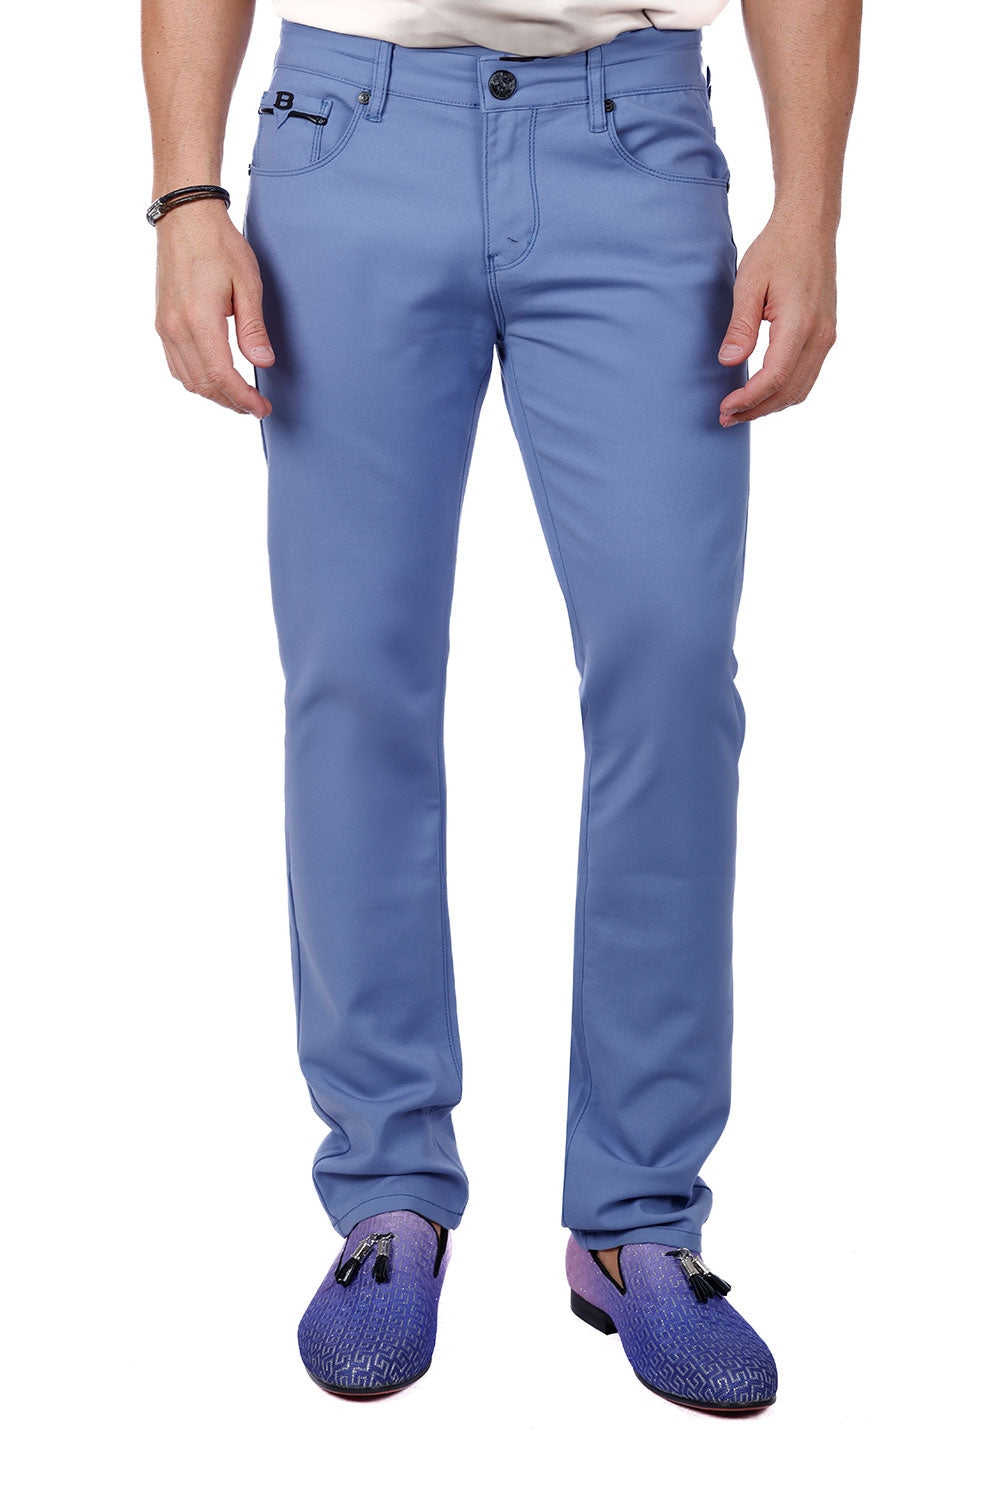 Barabas Men's Slim Fit Solid Color Plain Premium Jeans 3CPW32 Blue